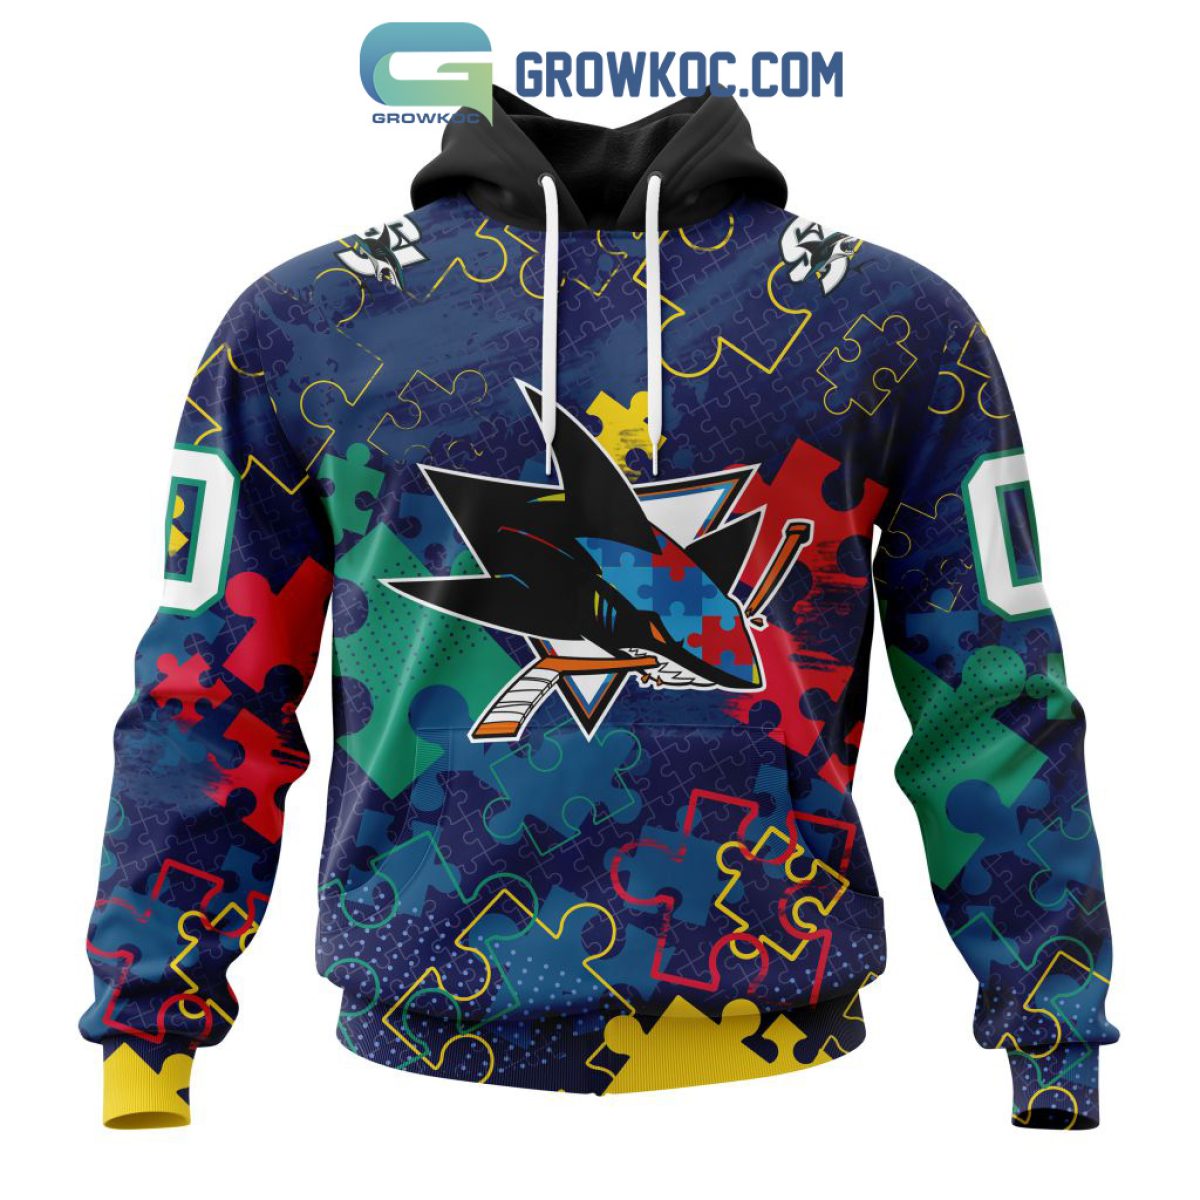 San Jose Sharks NHL Special Autism Awareness Design Hoodie T Shirt - Growkoc